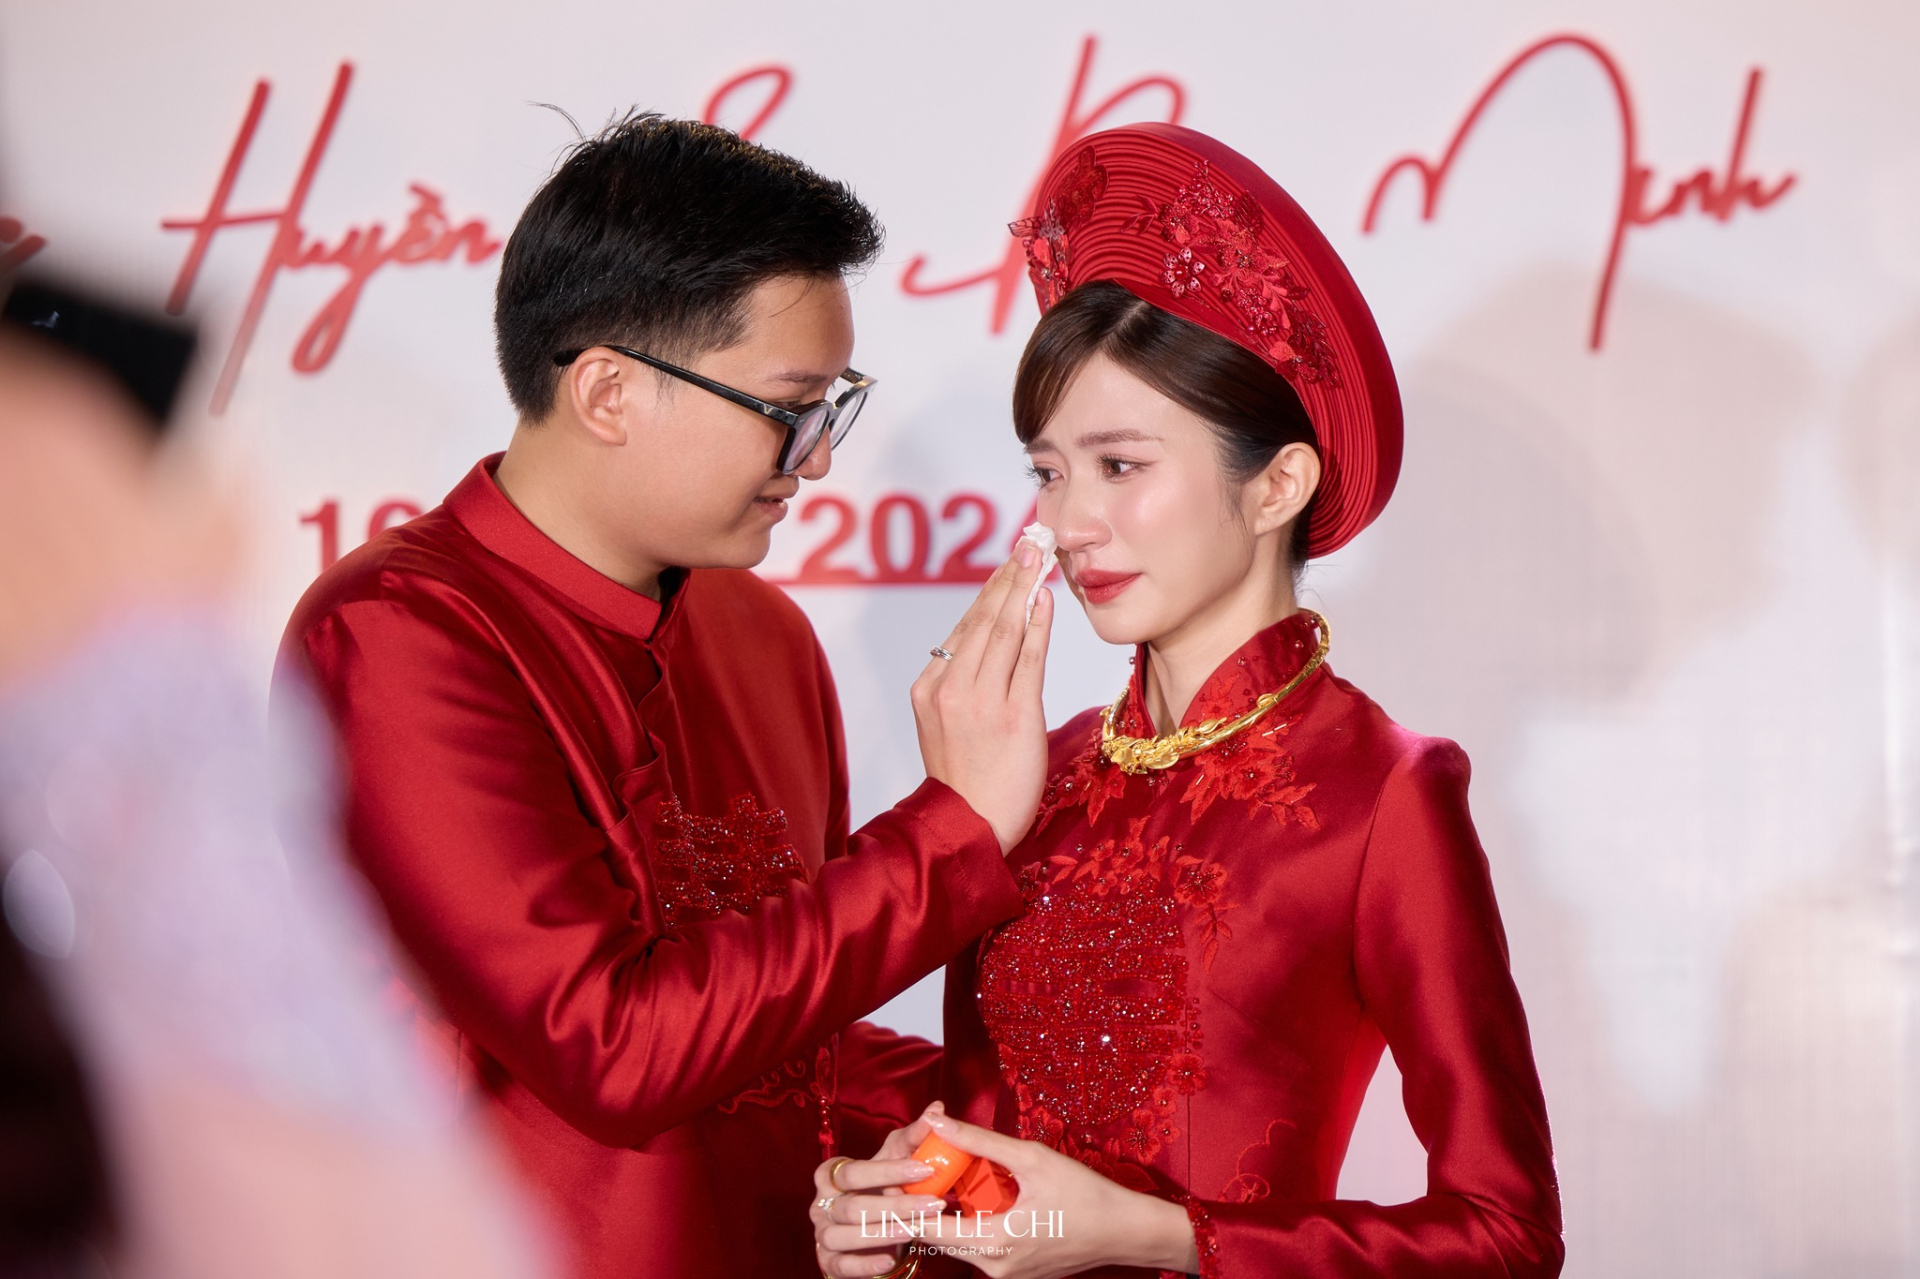 Lễ cưới ngập sắc đỏ của diễn viên Ngọc Huyền và cháu trai NSUT Chí Trung, cô dâu khóc nhận của hồi môn - ảnh 3